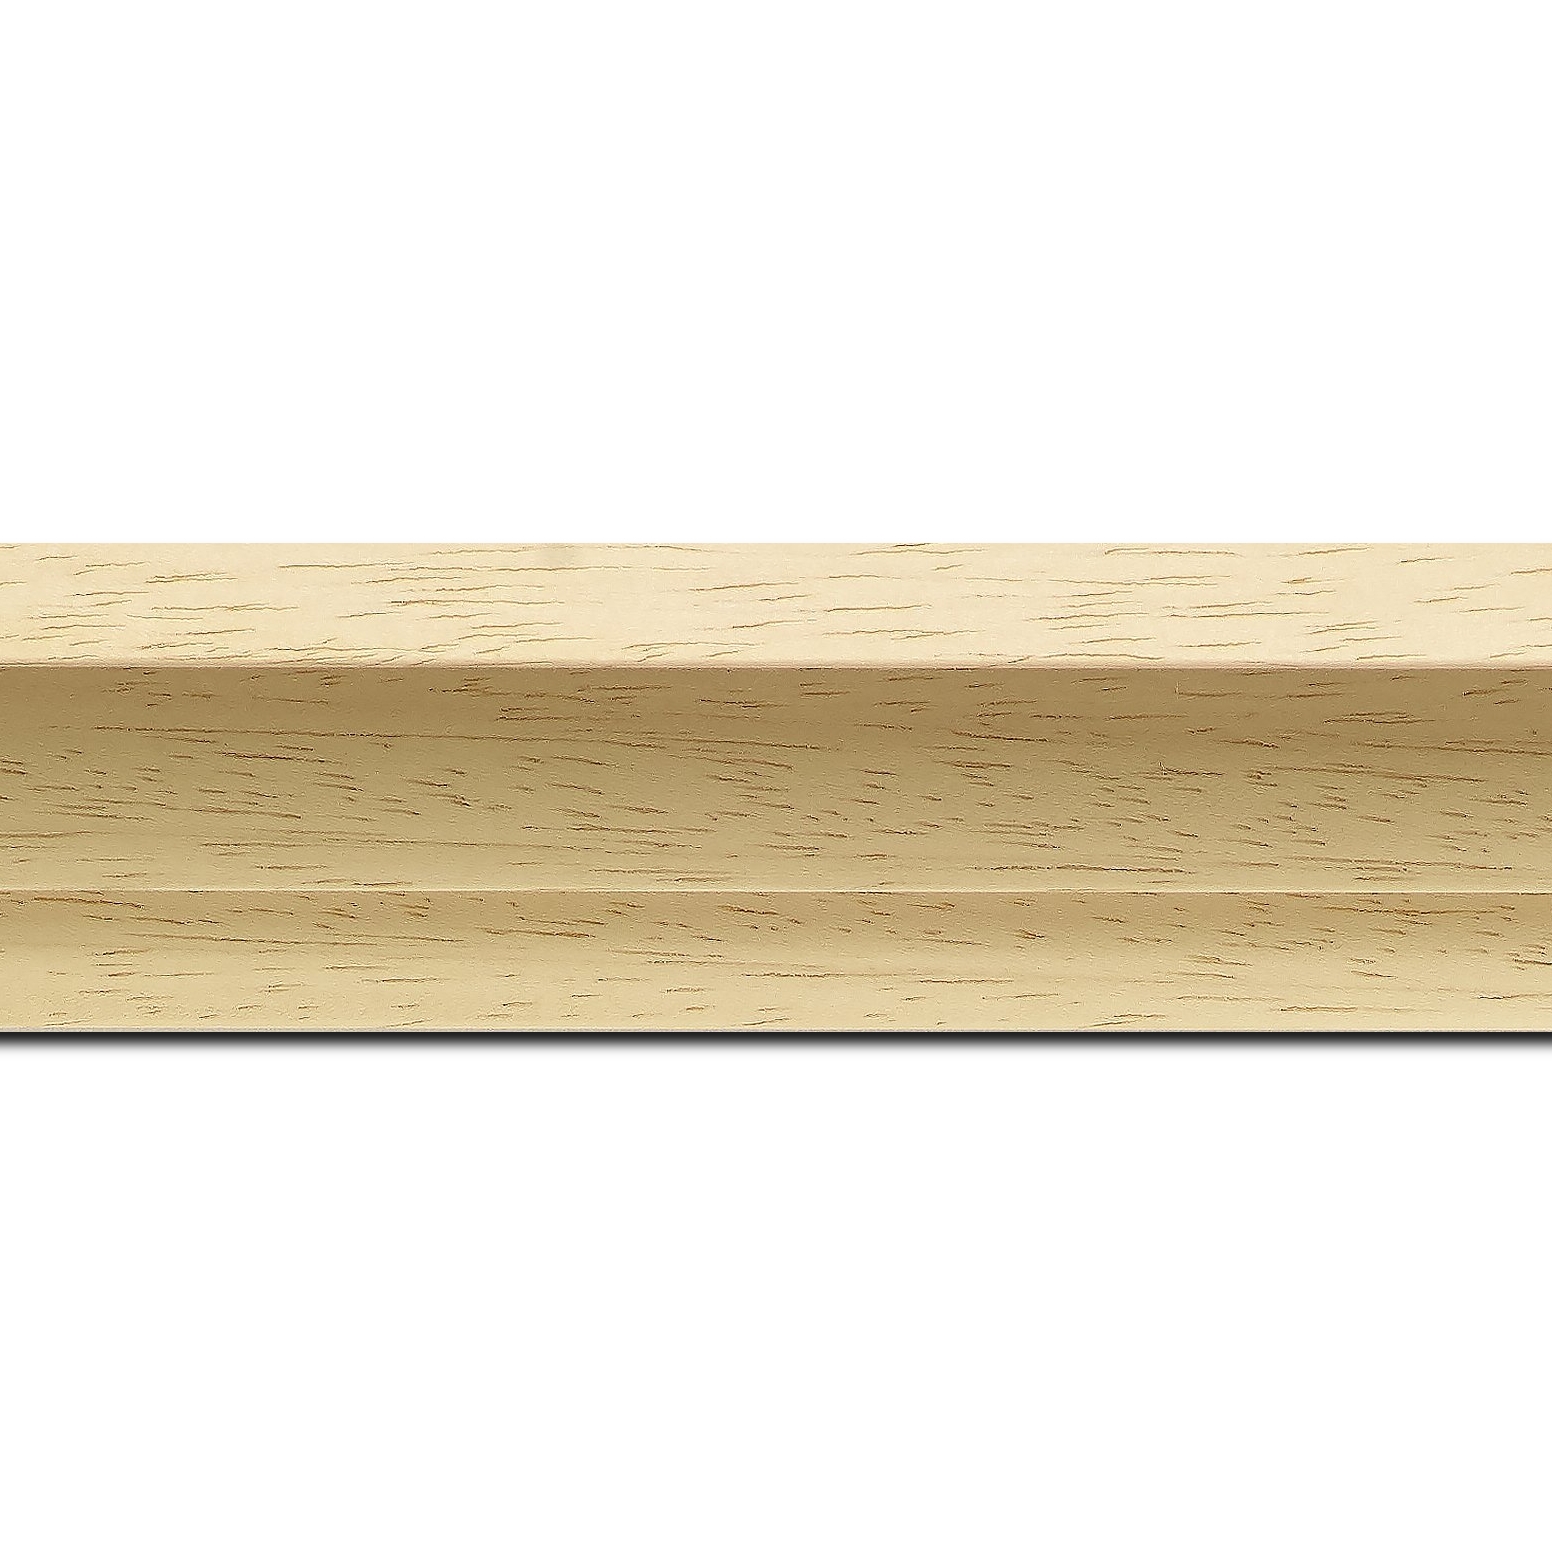 Pack par 12m, bois caisse américaine xl profil escalier largeur 4.9cm naturel (spécialement conçu pour les châssis 3d d'une épaisseur de 3 à 4cm) sans verni,peut être peint...(longueur baguette pouvant varier entre 2.40m et 3m selon arrivage des bois)